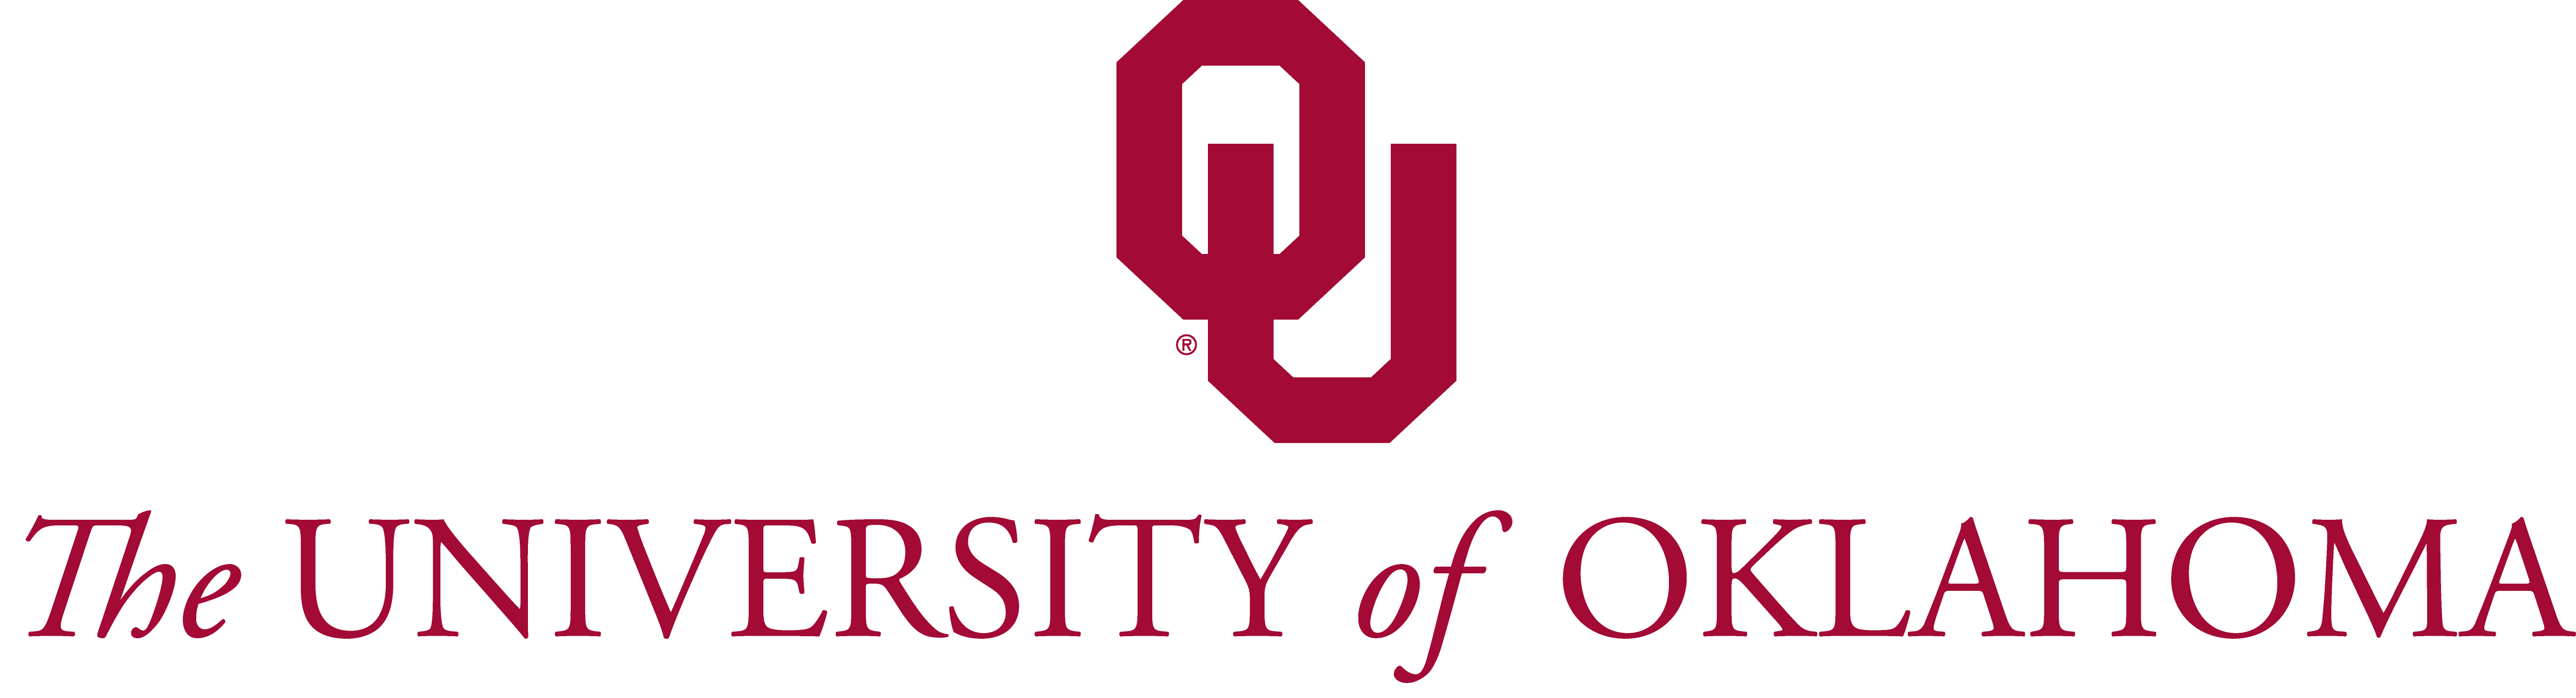 orter_logos/oklahoma_university company logo